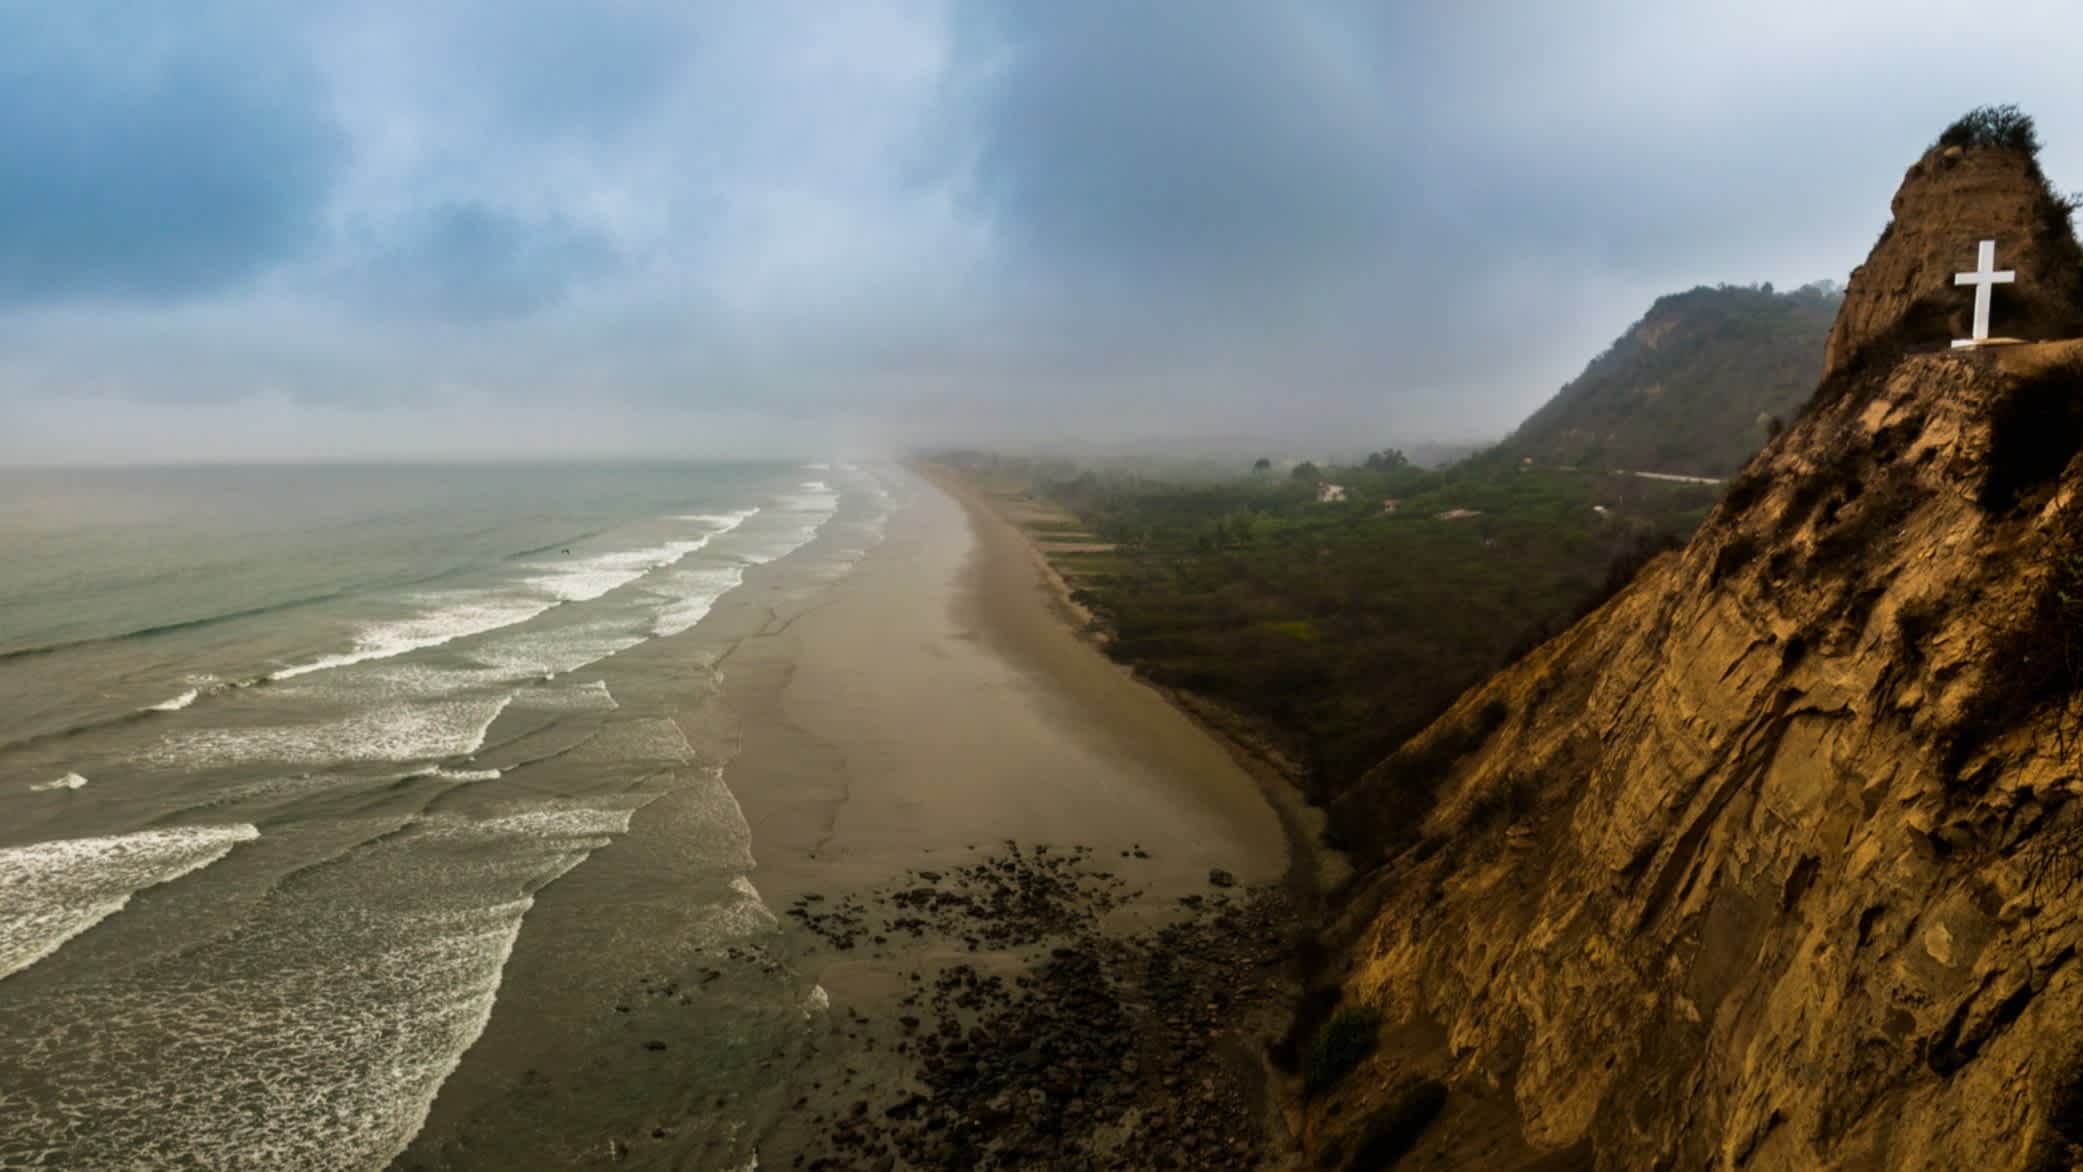 Der Strand von Montañita, Provinz Santa Elena, Ecuador bei bewölktem Himmel und mit Ausblick auf das weite Meer mit Wellen sowie dem Gebirge.